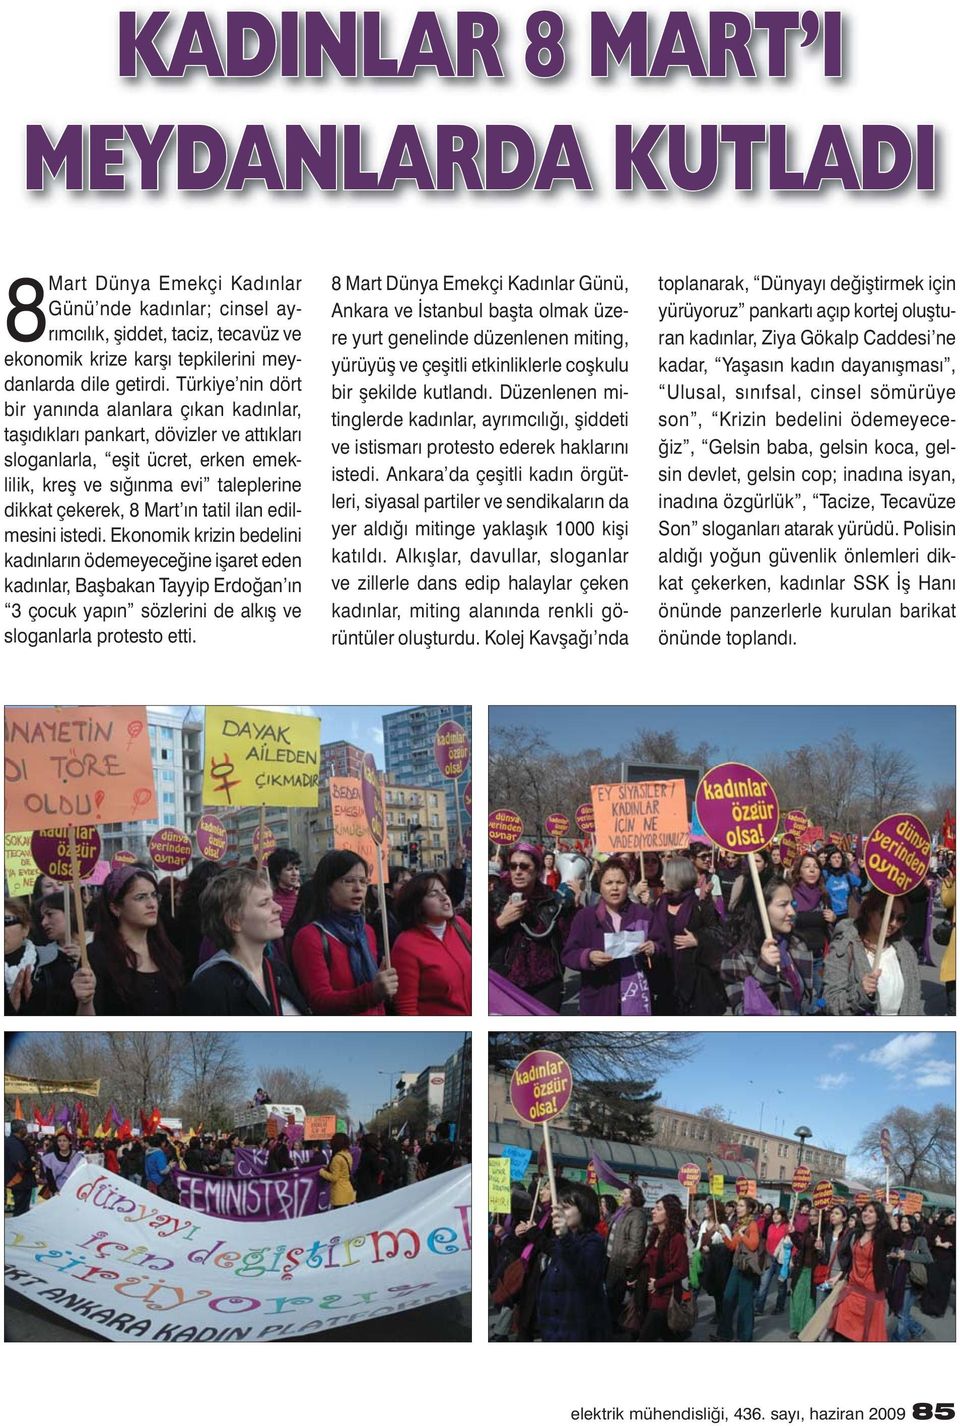 tatil ilan edilmesini istedi. Ekonomik krizin bedelini kadınların ödemeyeceğine ișaret eden kadınlar, Bașbakan Tayyip Erdoğan ın 3 çocuk yapın sözlerini de alkıș ve sloganlarla protesto etti.